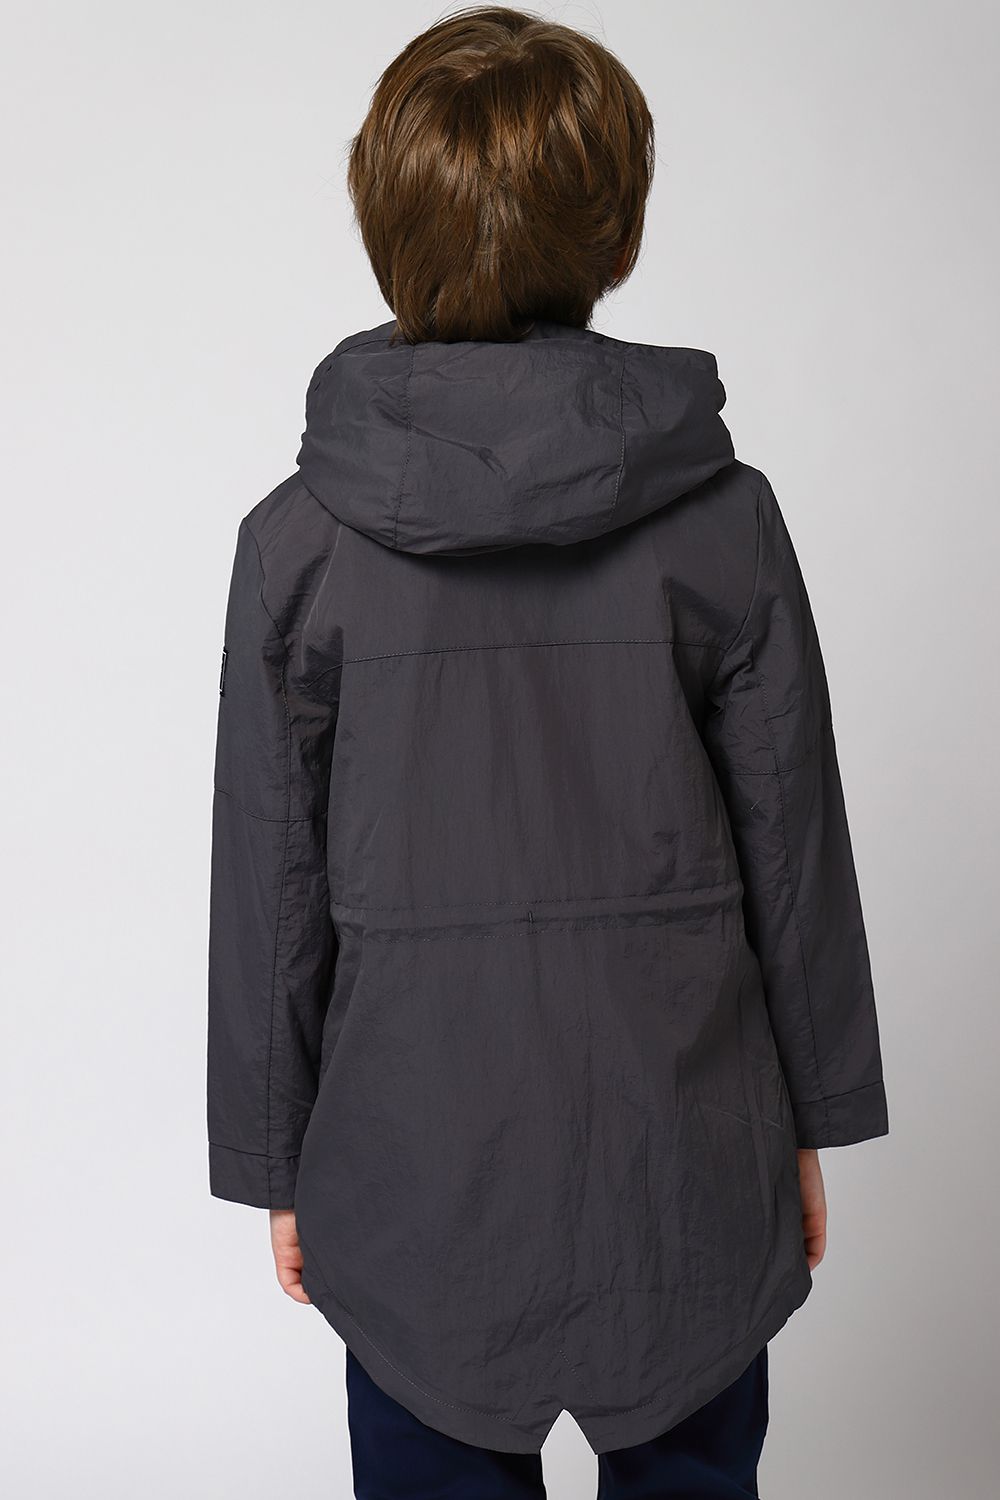 Куртка Mayoral, размер 166, цвет серый 6.432/10 - фото 4